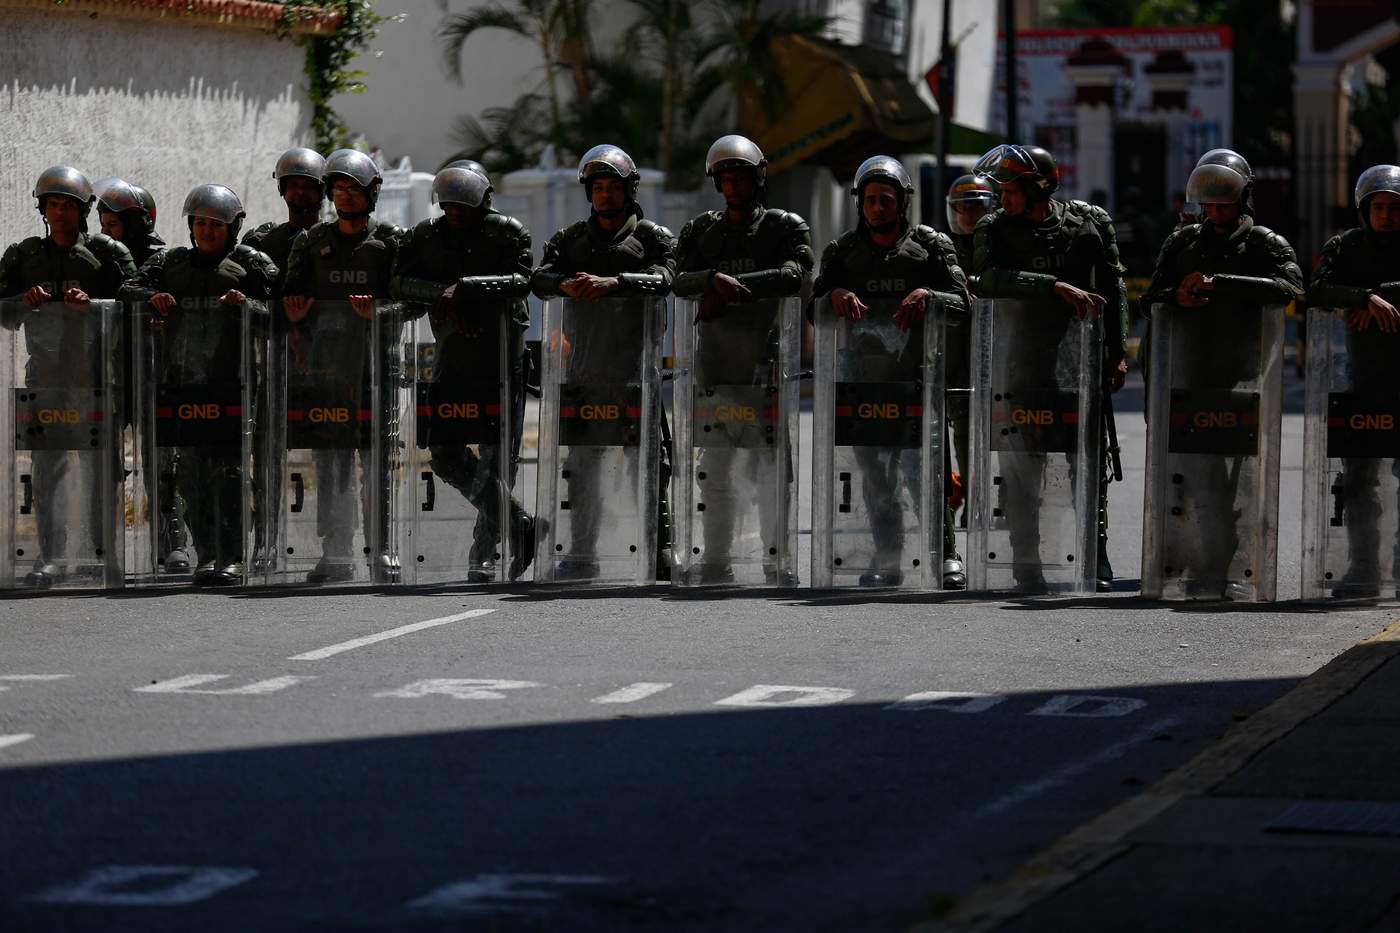 El pasado 23 de enero, el presidente de la Asamblea Nacional venezolana, el opositor Juan Guaidó, se proclamó presidente interino de Venezuela al considerar 'ilegítima' la toma de posesión de Maduro el día 10. (ARCHIVO)